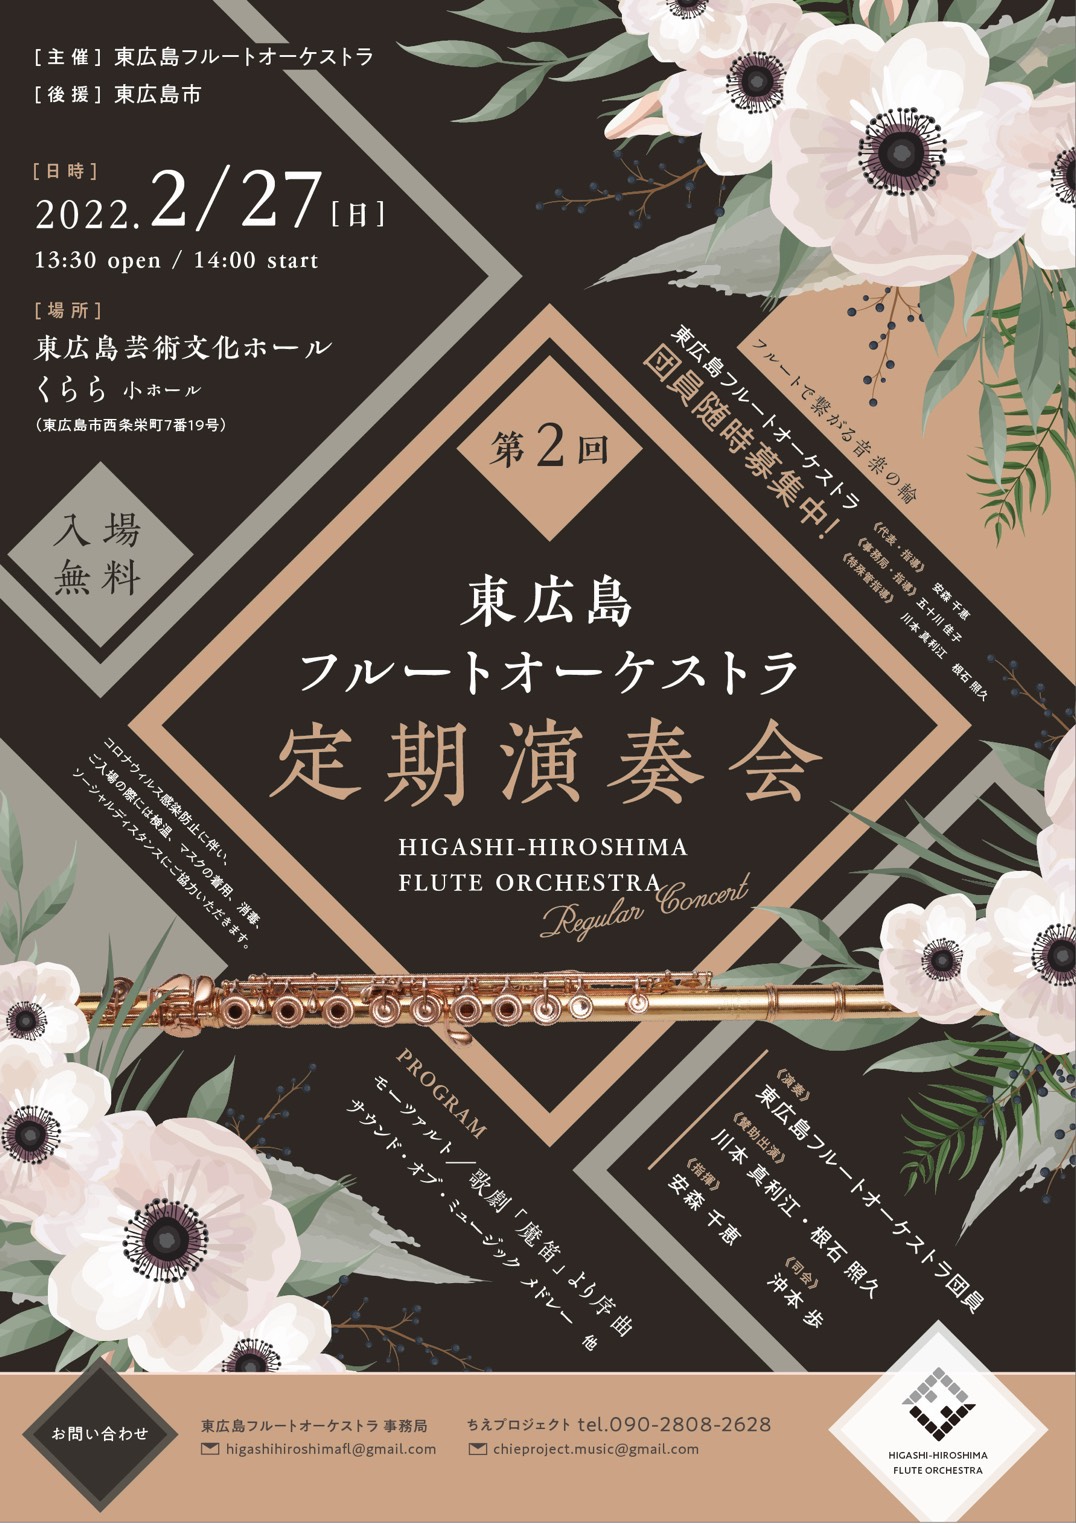 【中止】第2回 東広島フルートオーケストラ定期演奏会